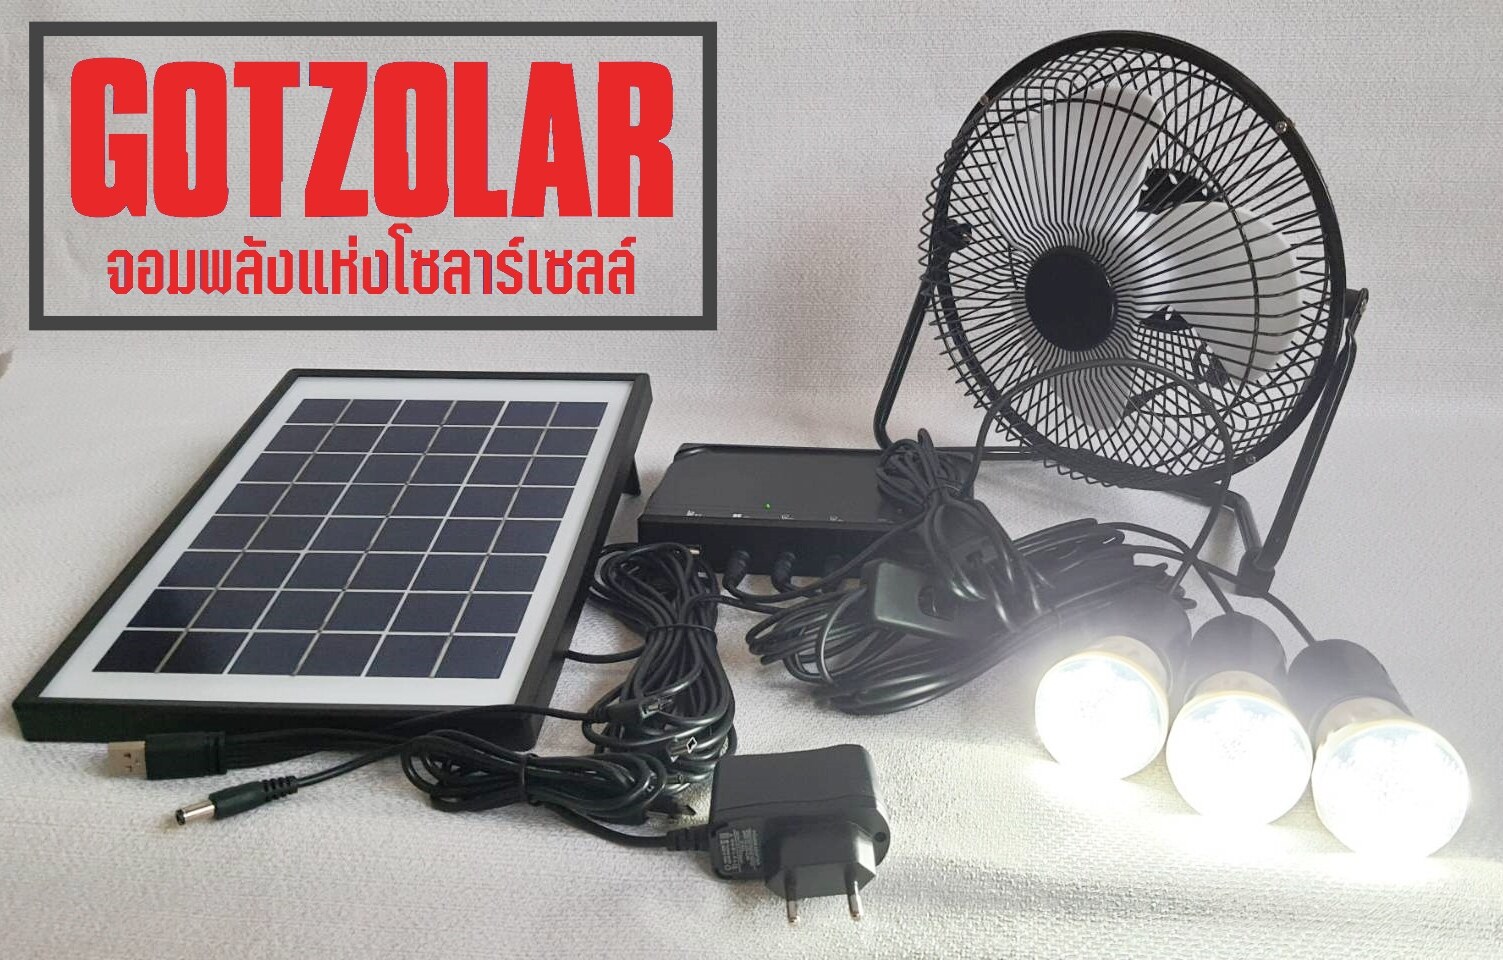 ชุดนอนนา พร้อมปลั๊กชาร์จไฟบ้าน พัดลม หลอดไฟ โซล่าเซลล์ สายชาร์จมือถือ สามารถพกพา สะดวกต่อการใช้งาน DC Solar Fan+LED Light SET Plus USB Charger Battery